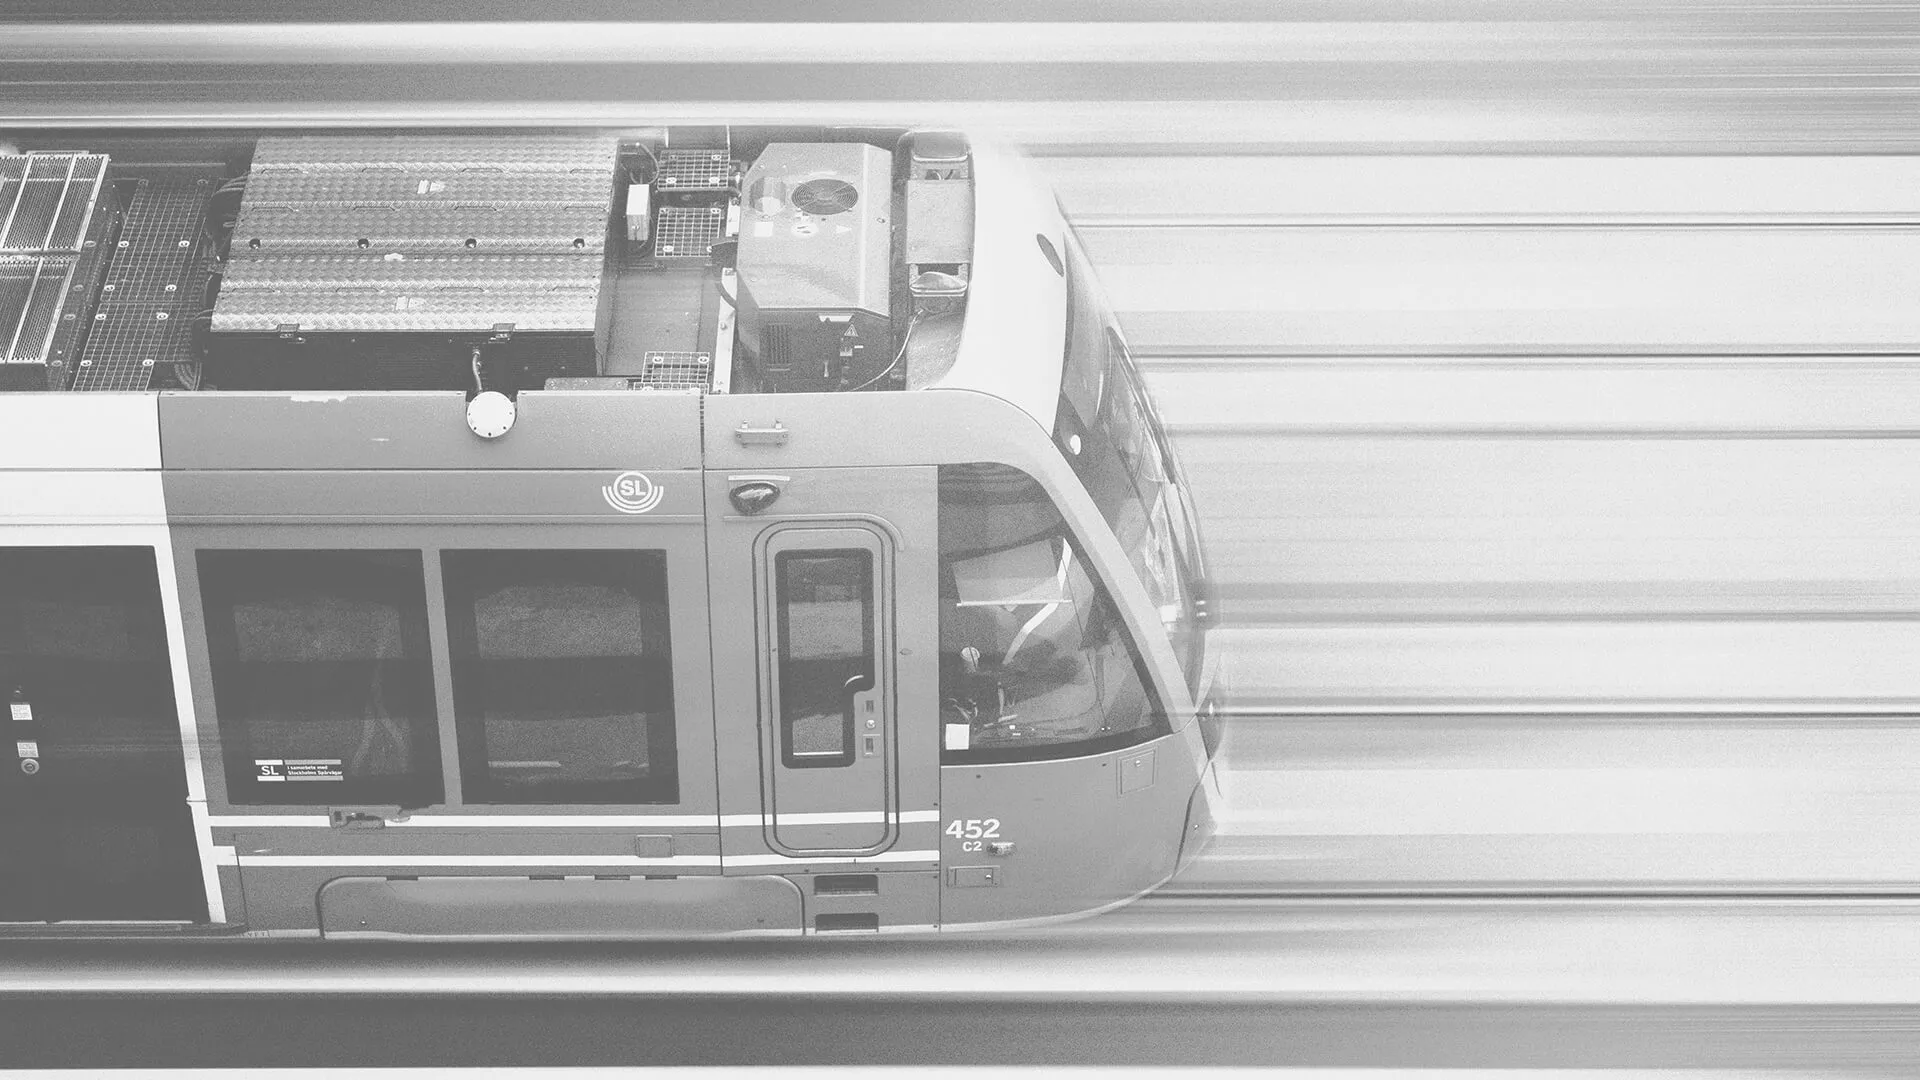 ストックホルムの公共交通機関のスピードに対するニーズをインテリジェンスが推進